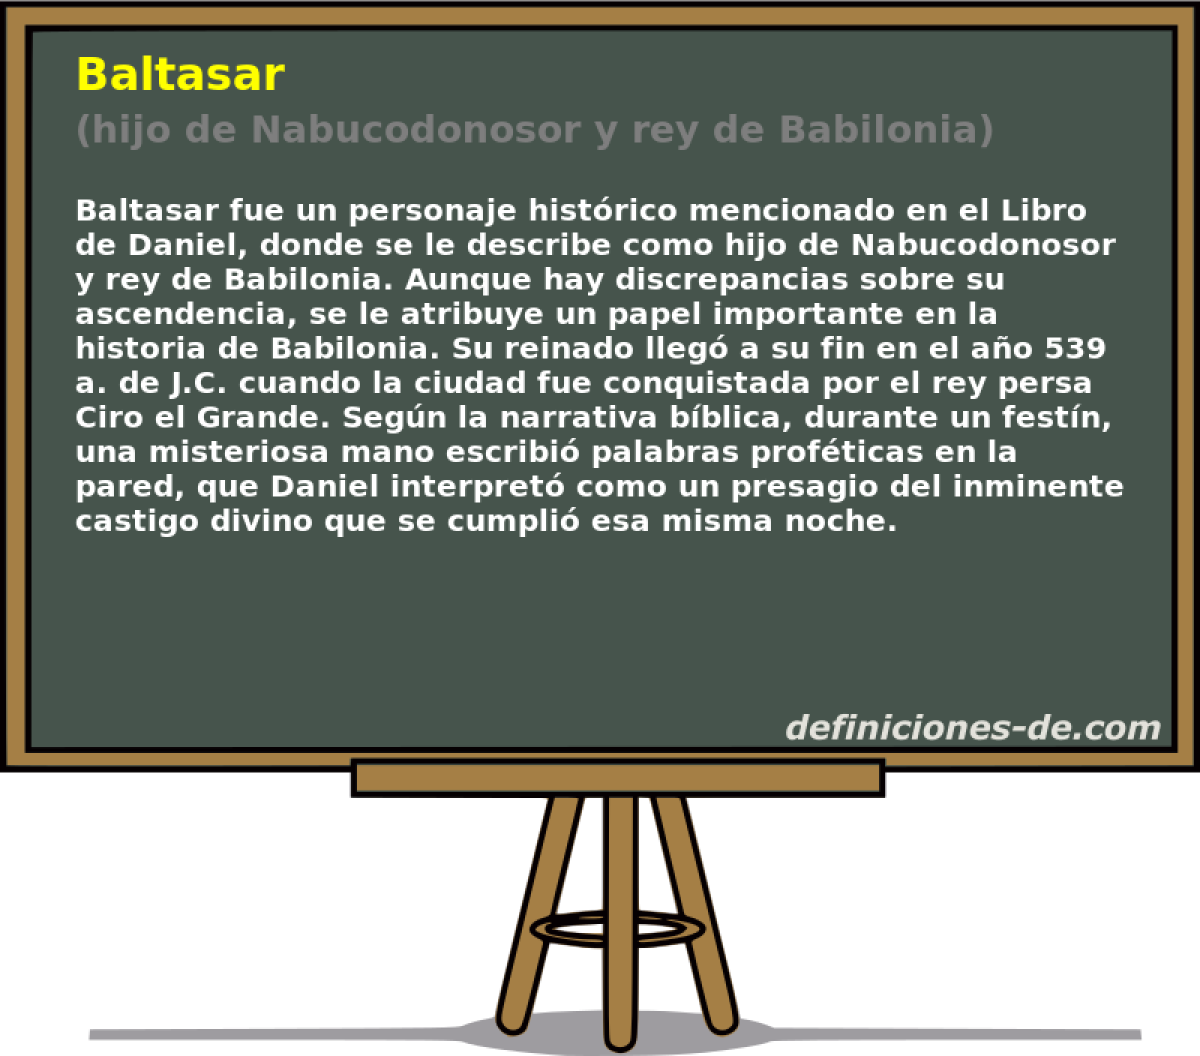 Baltasar (hijo de Nabucodonosor y rey de Babilonia)